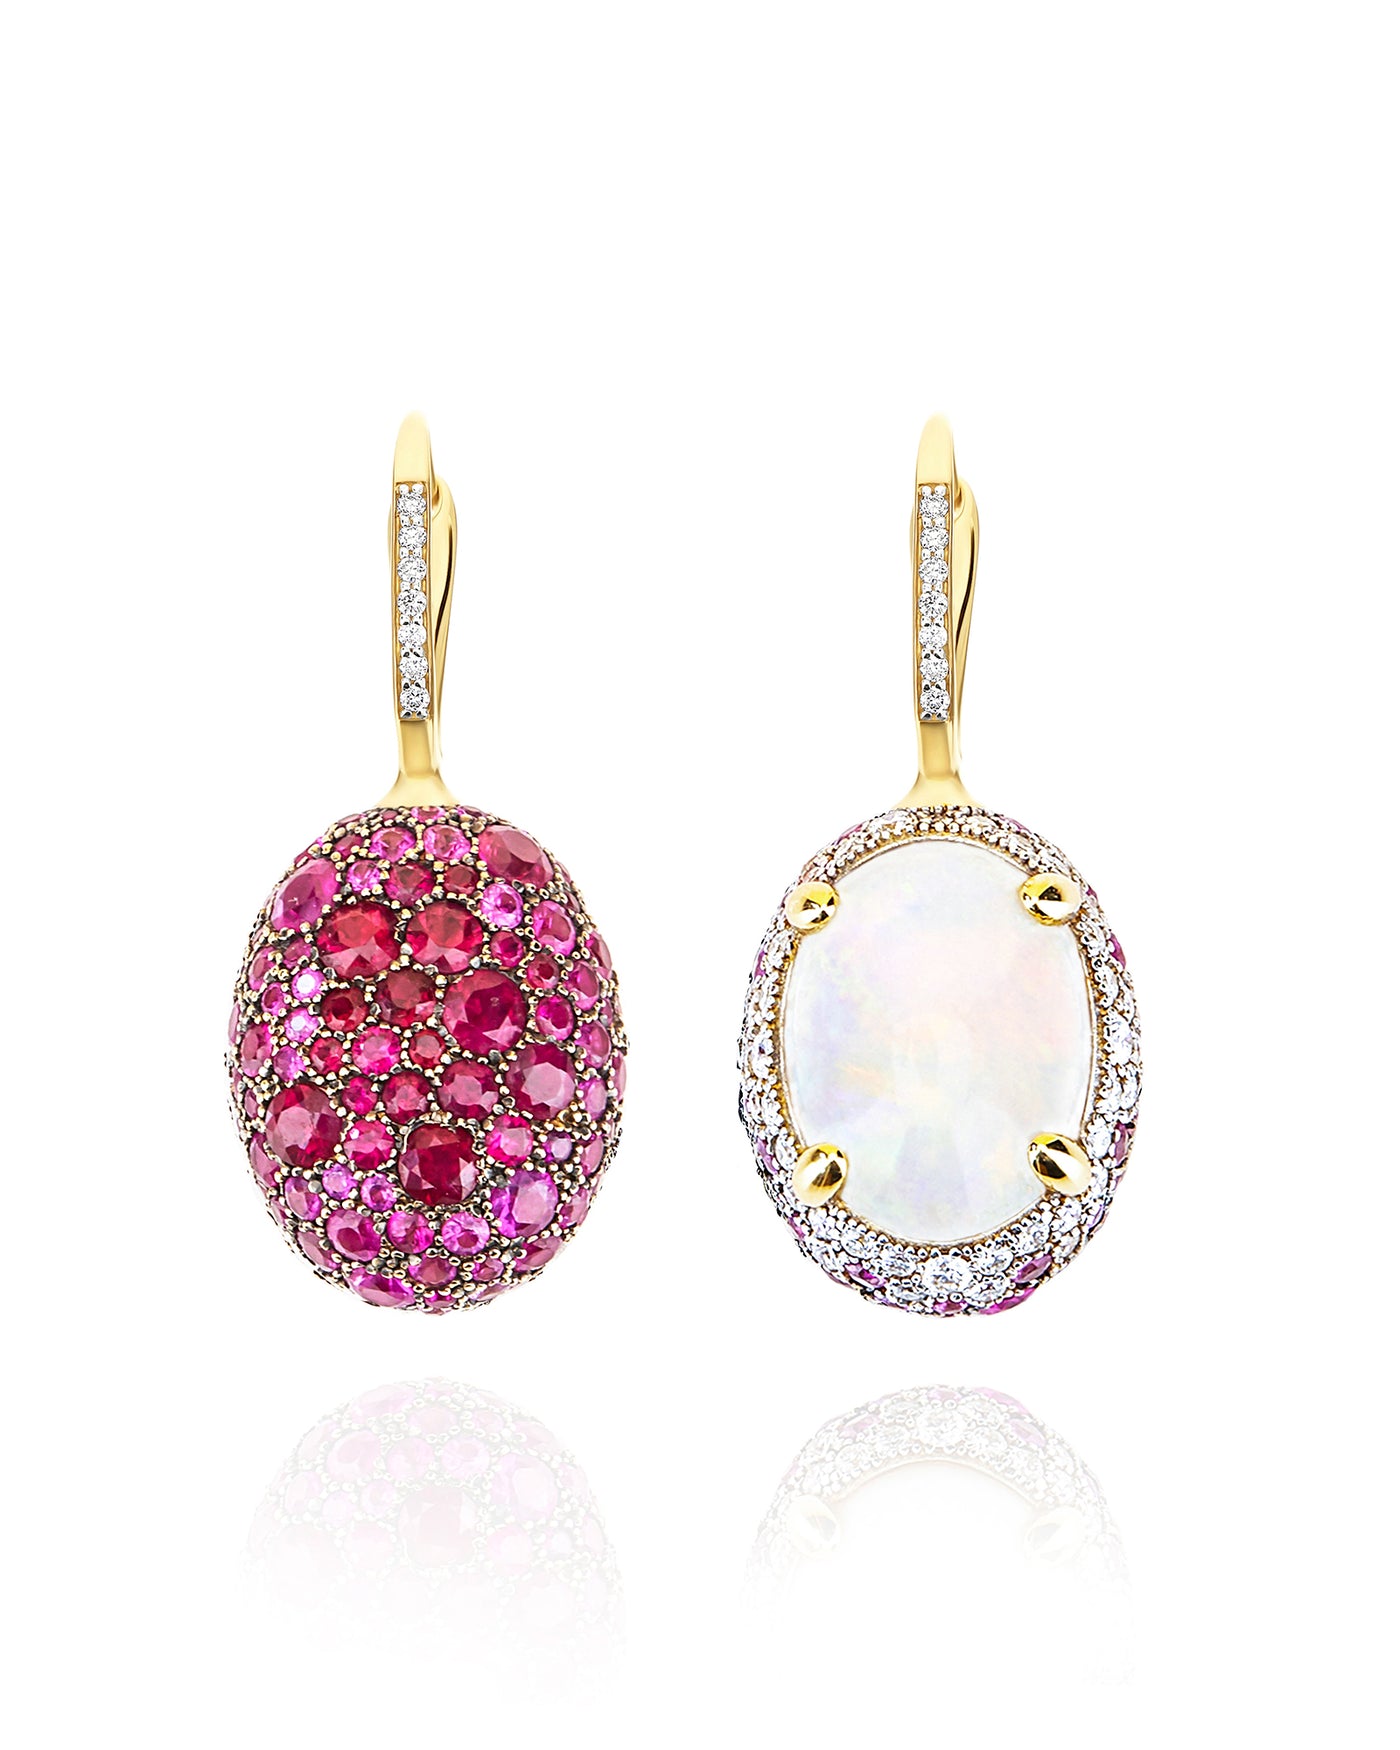 Orecchini CILIEGINE "DANCING REVERSE" double face in oro, zaffiri rosa, rubini, opale bianco Australiano e diamanti (grandi)